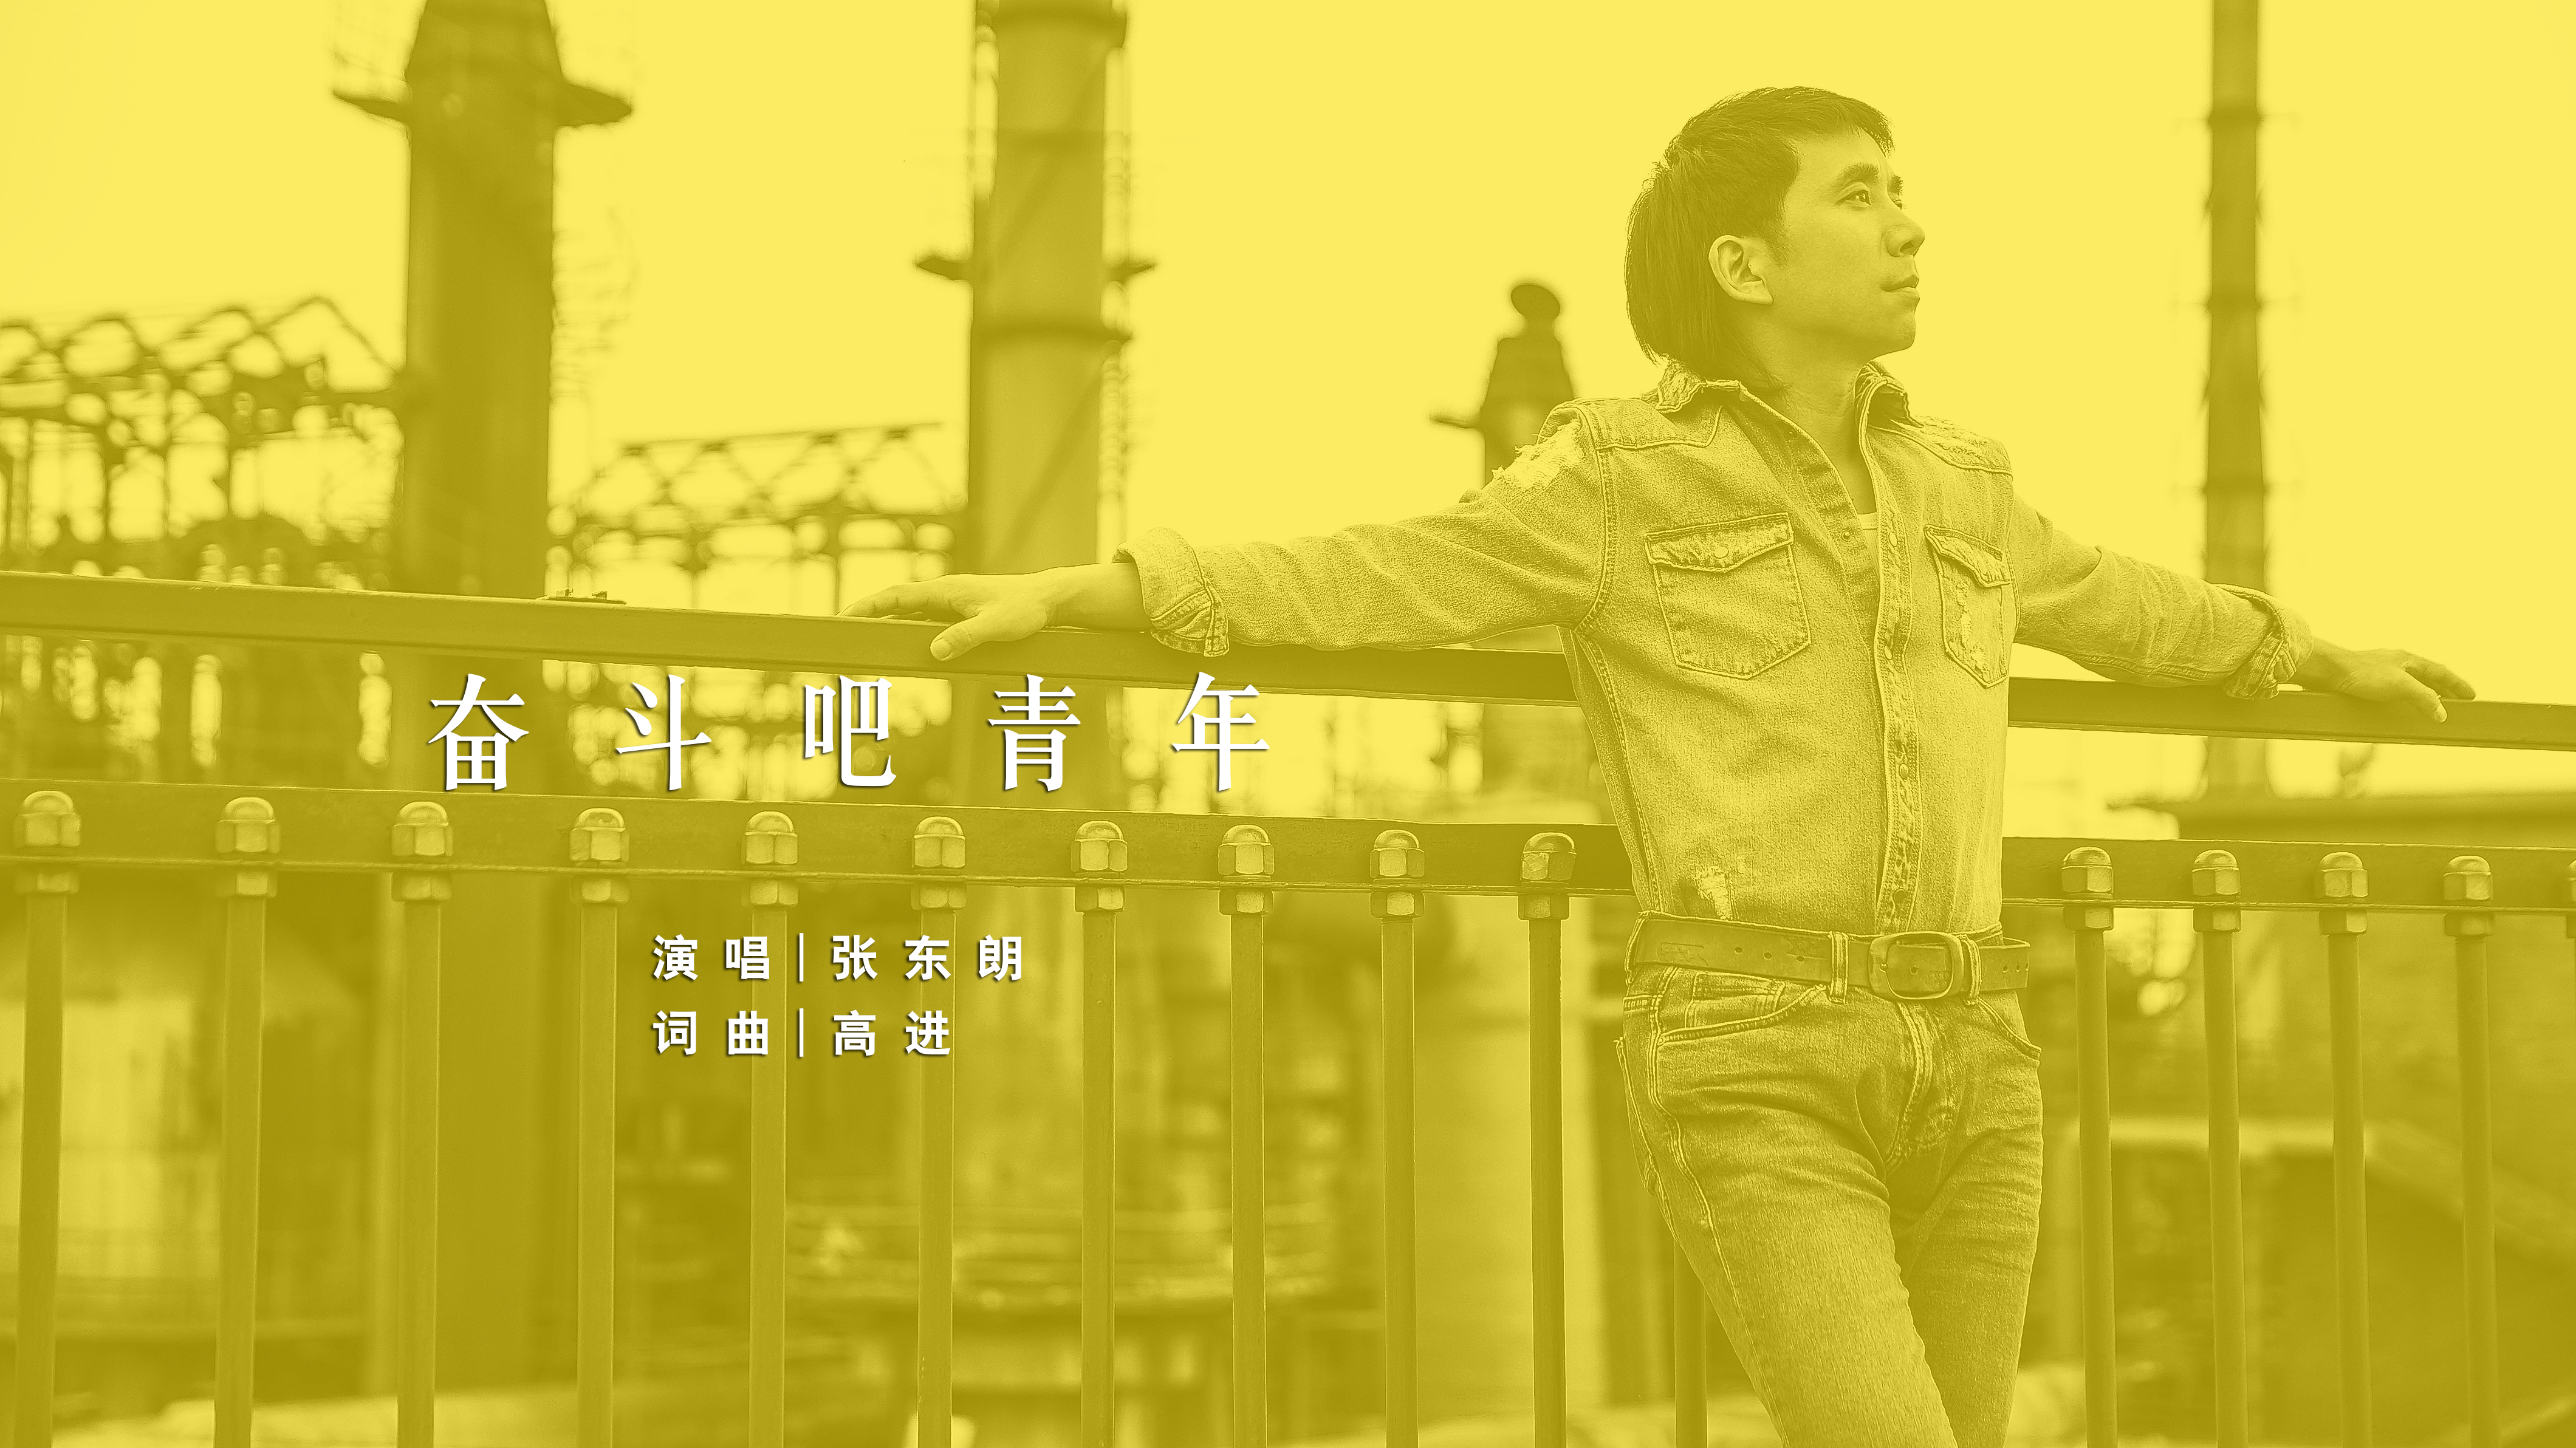 张东朗和高进合作新歌  《奋斗吧青年》献礼青年人